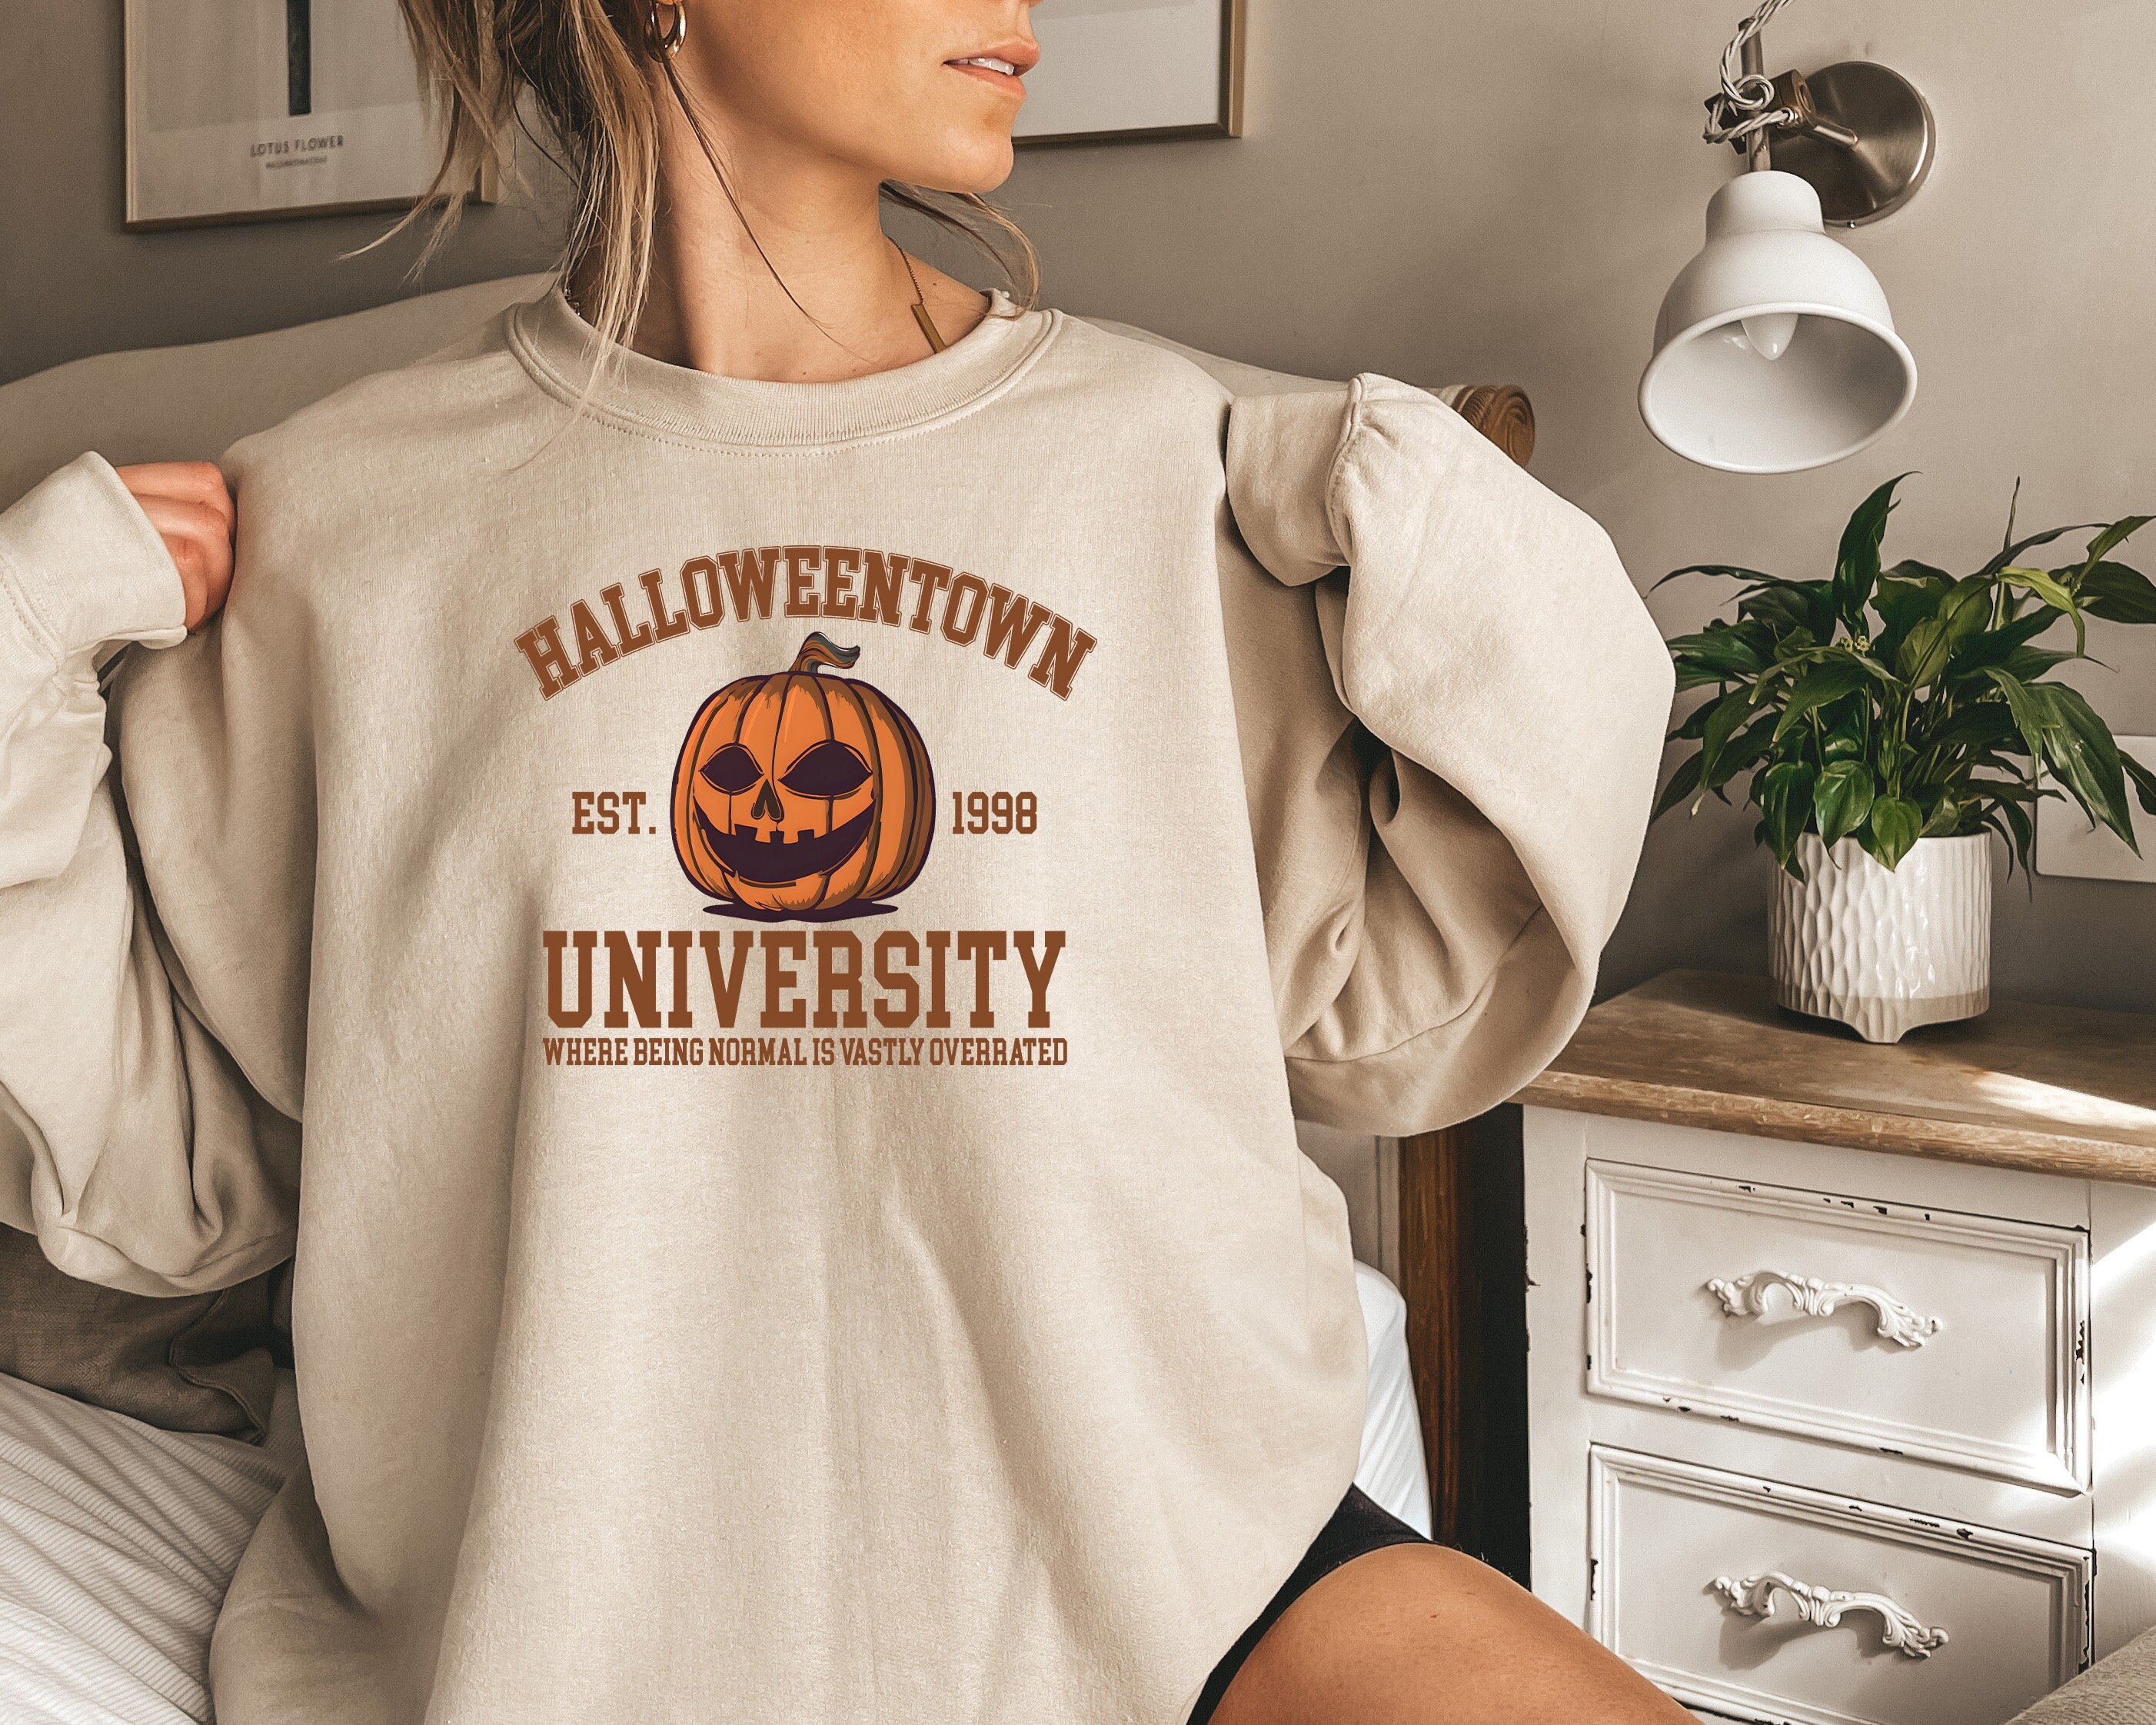 Halloweentown, Spooky Shirt, Halloweentown shirt, halloween sweatshirt, fall sweatshirt, fall, Halloween shirts, halloweentown sweatshirt